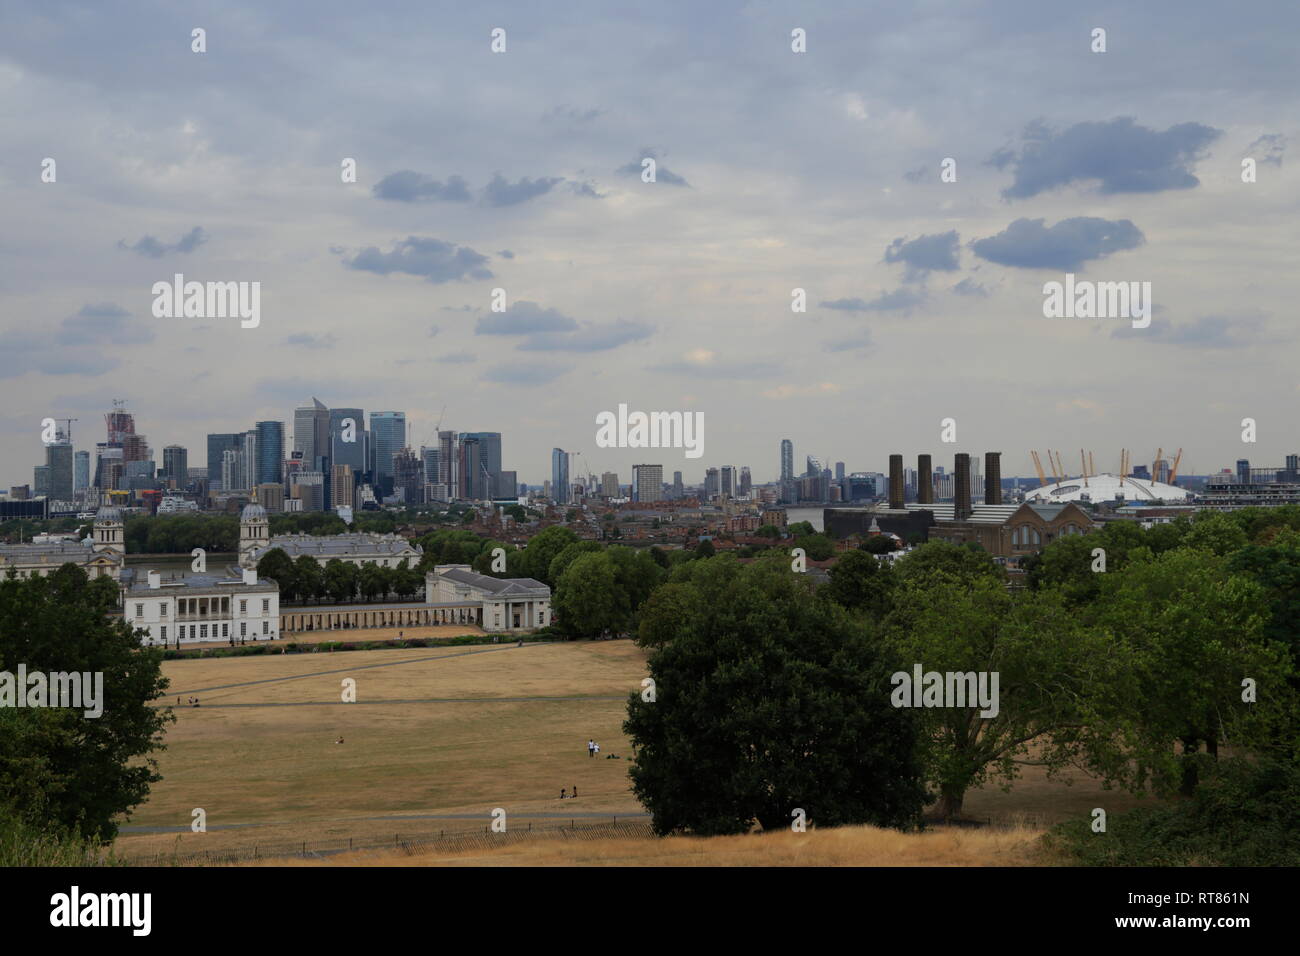 Vista sulla città e punti di riferimento architettonici come la vecchia Royal Naval College e l'Arena O2 da Greenwich a Londra, Regno Unito. Foto Stock